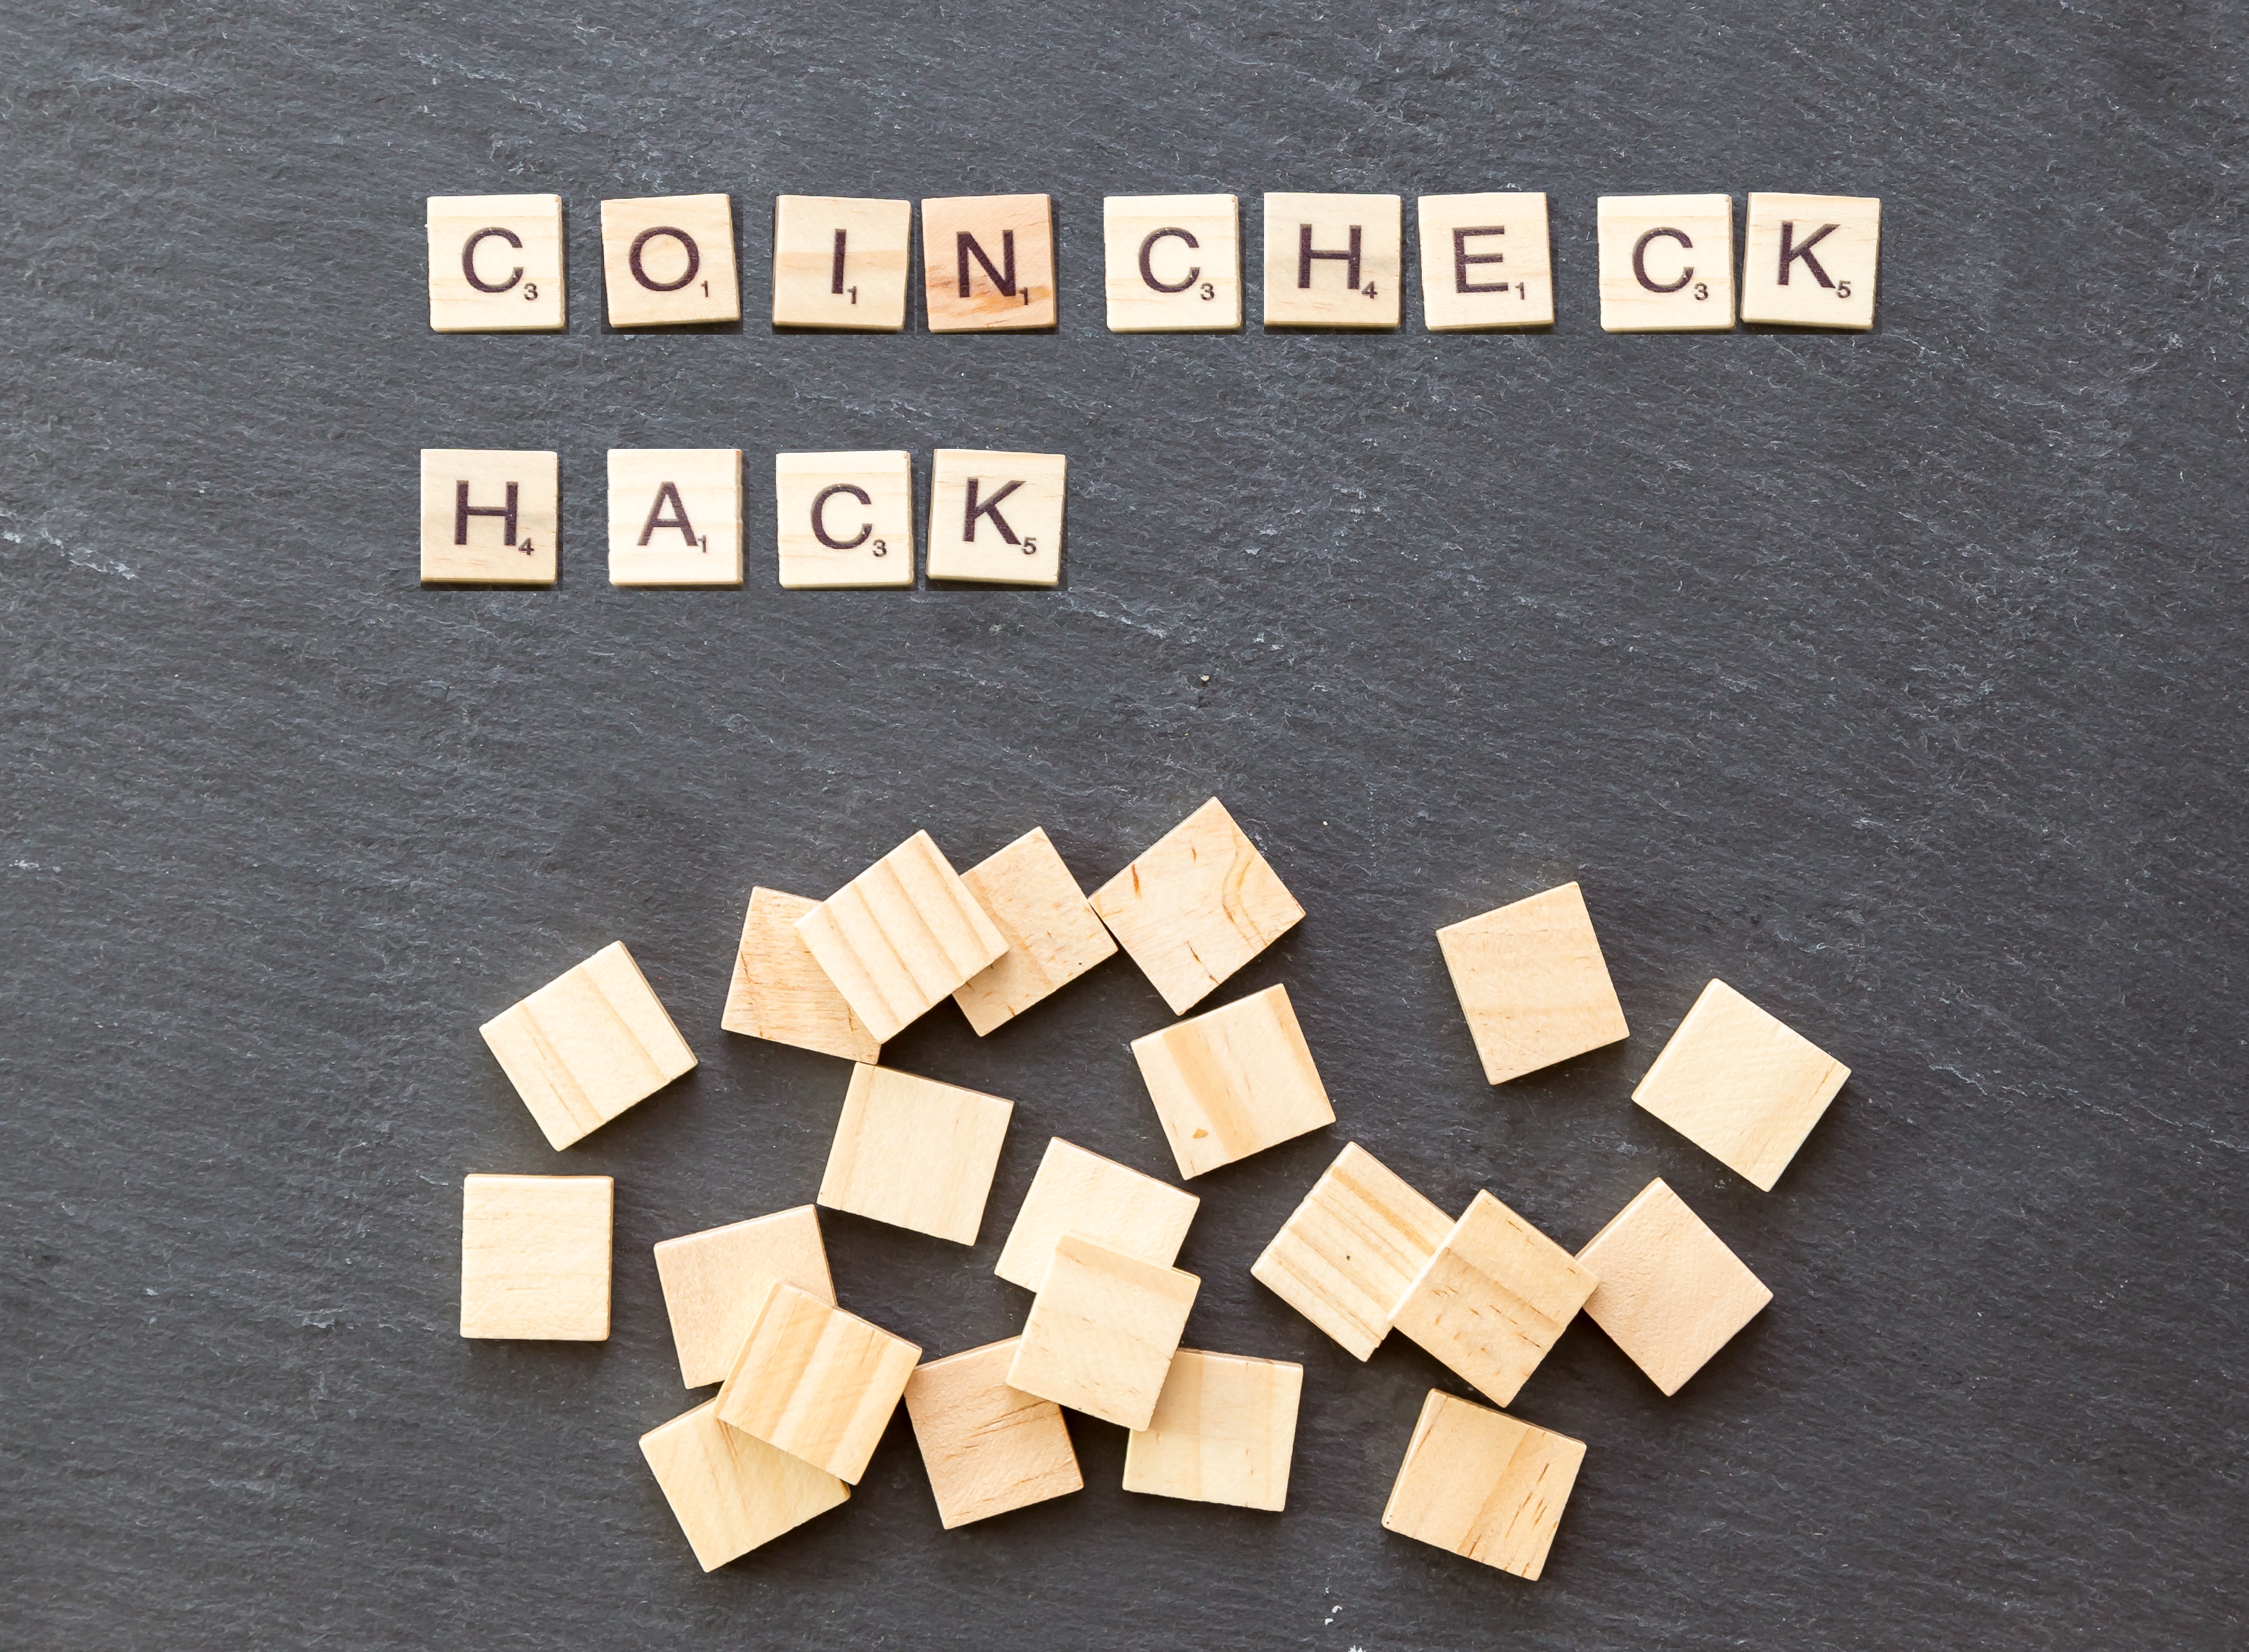 coincheck hack